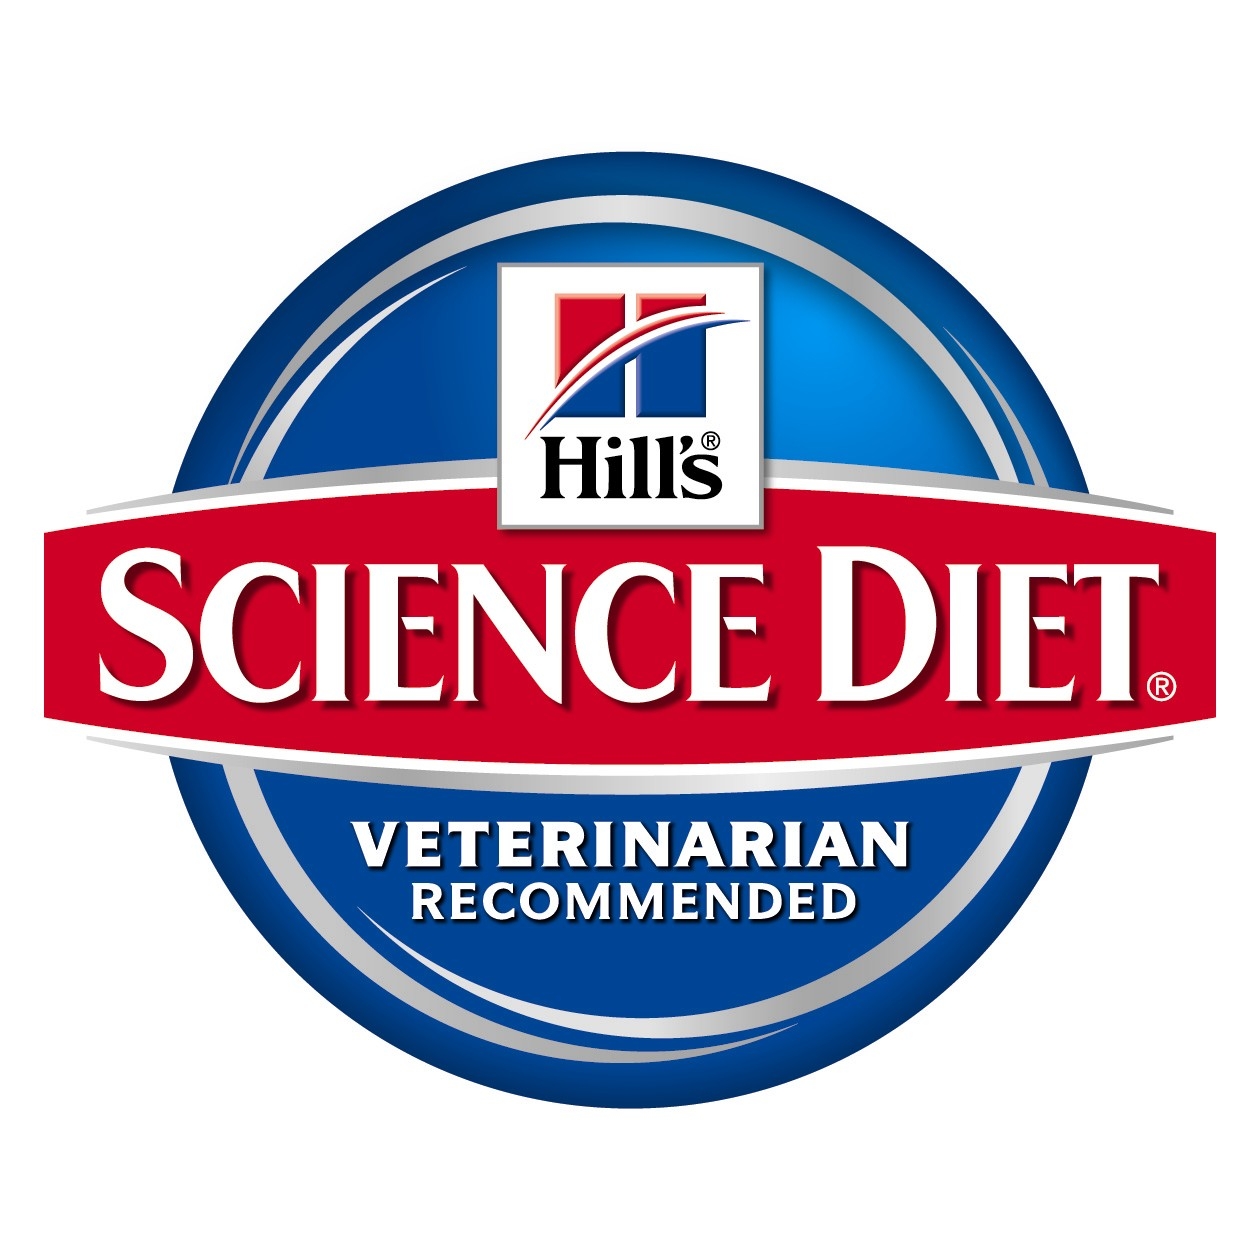 Hills Science Diet Logo photo - 1